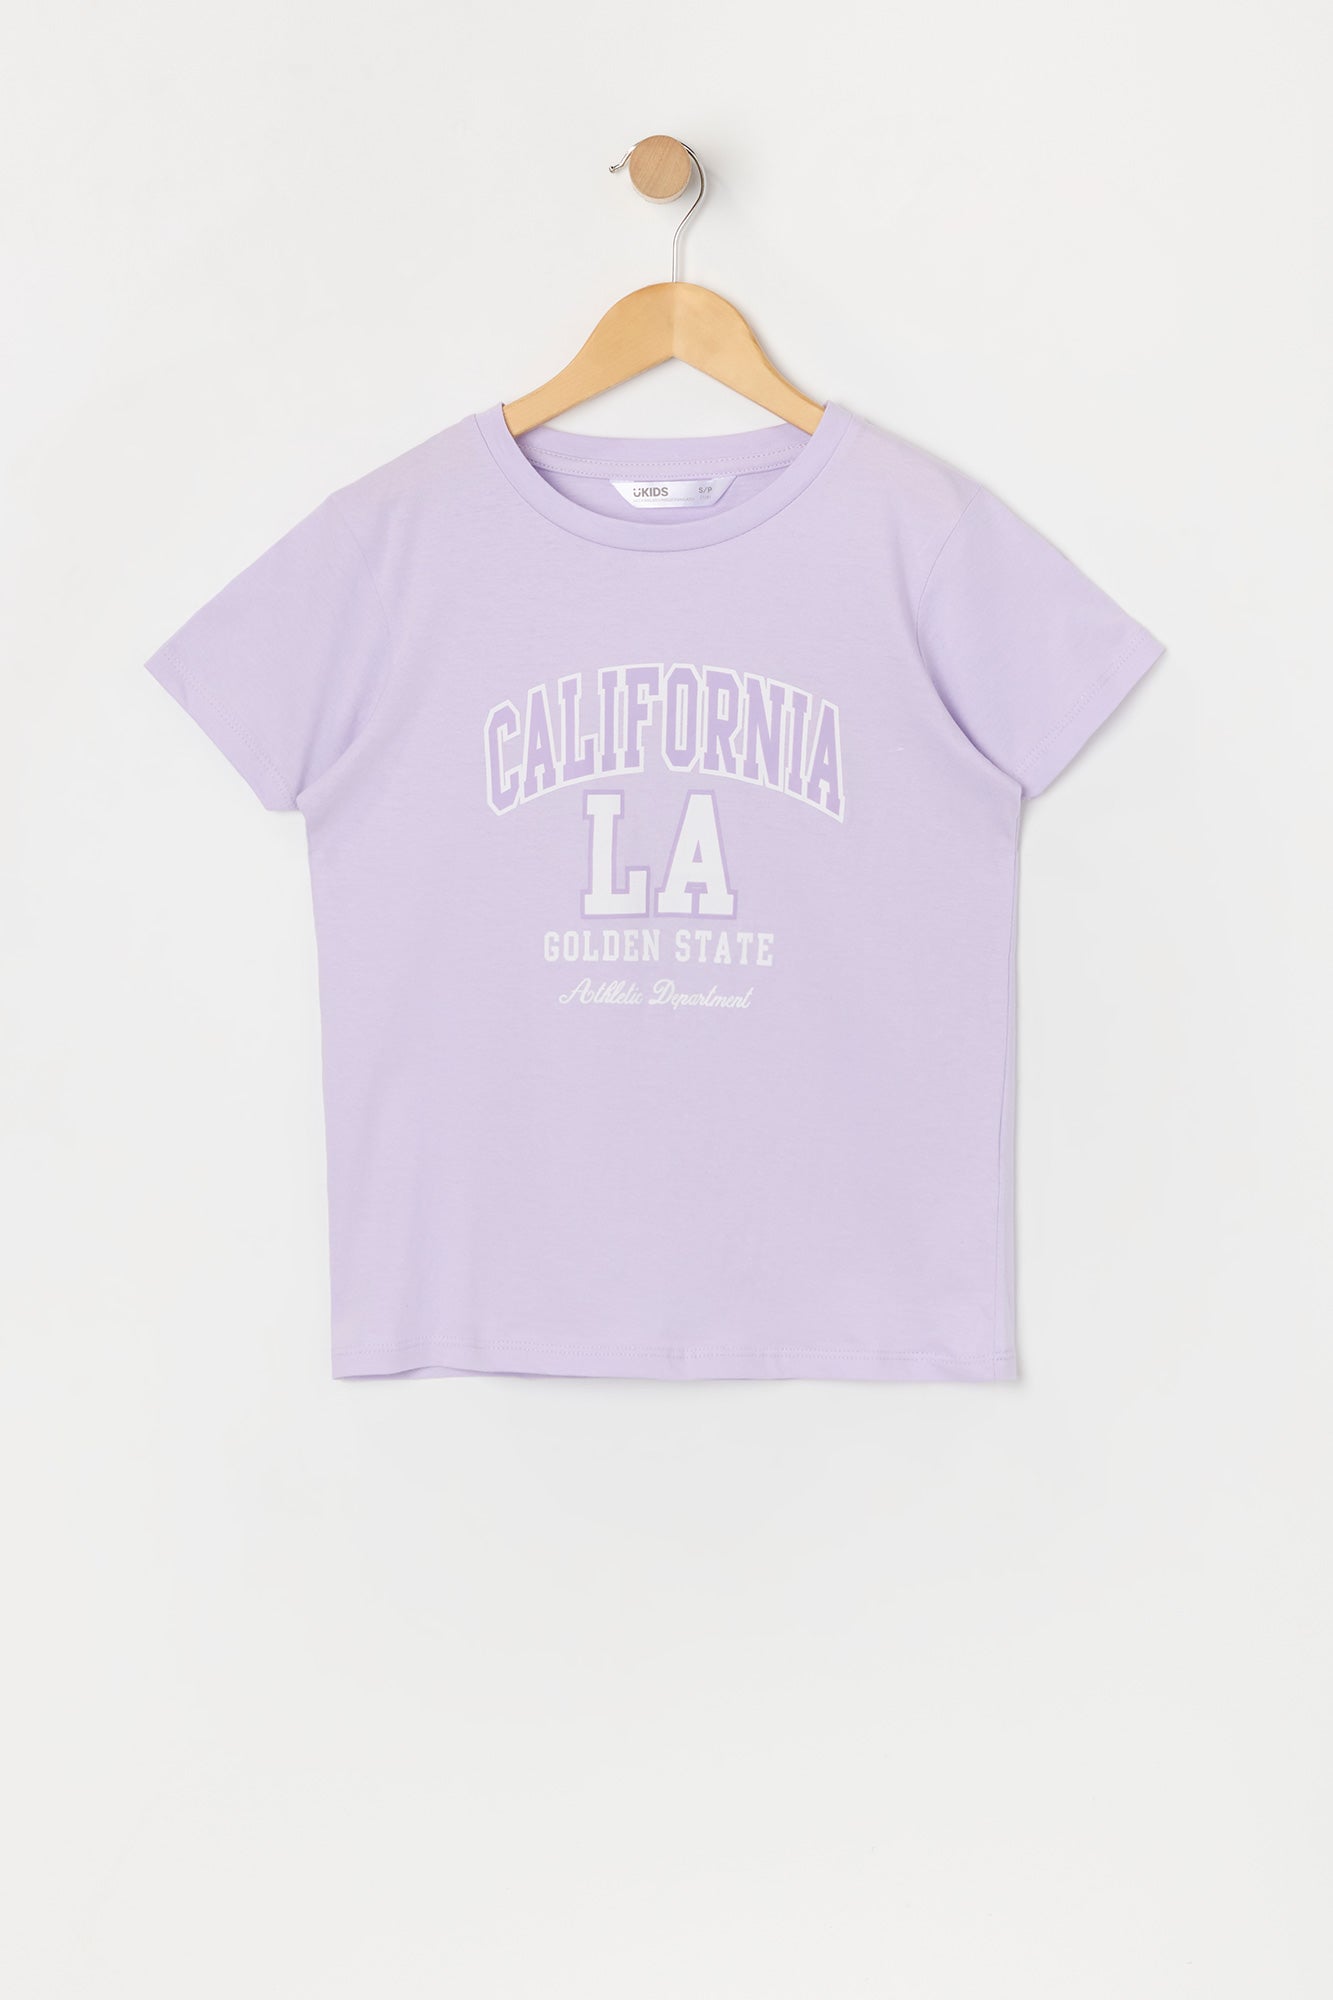 Girls California Graphic T-Shirt